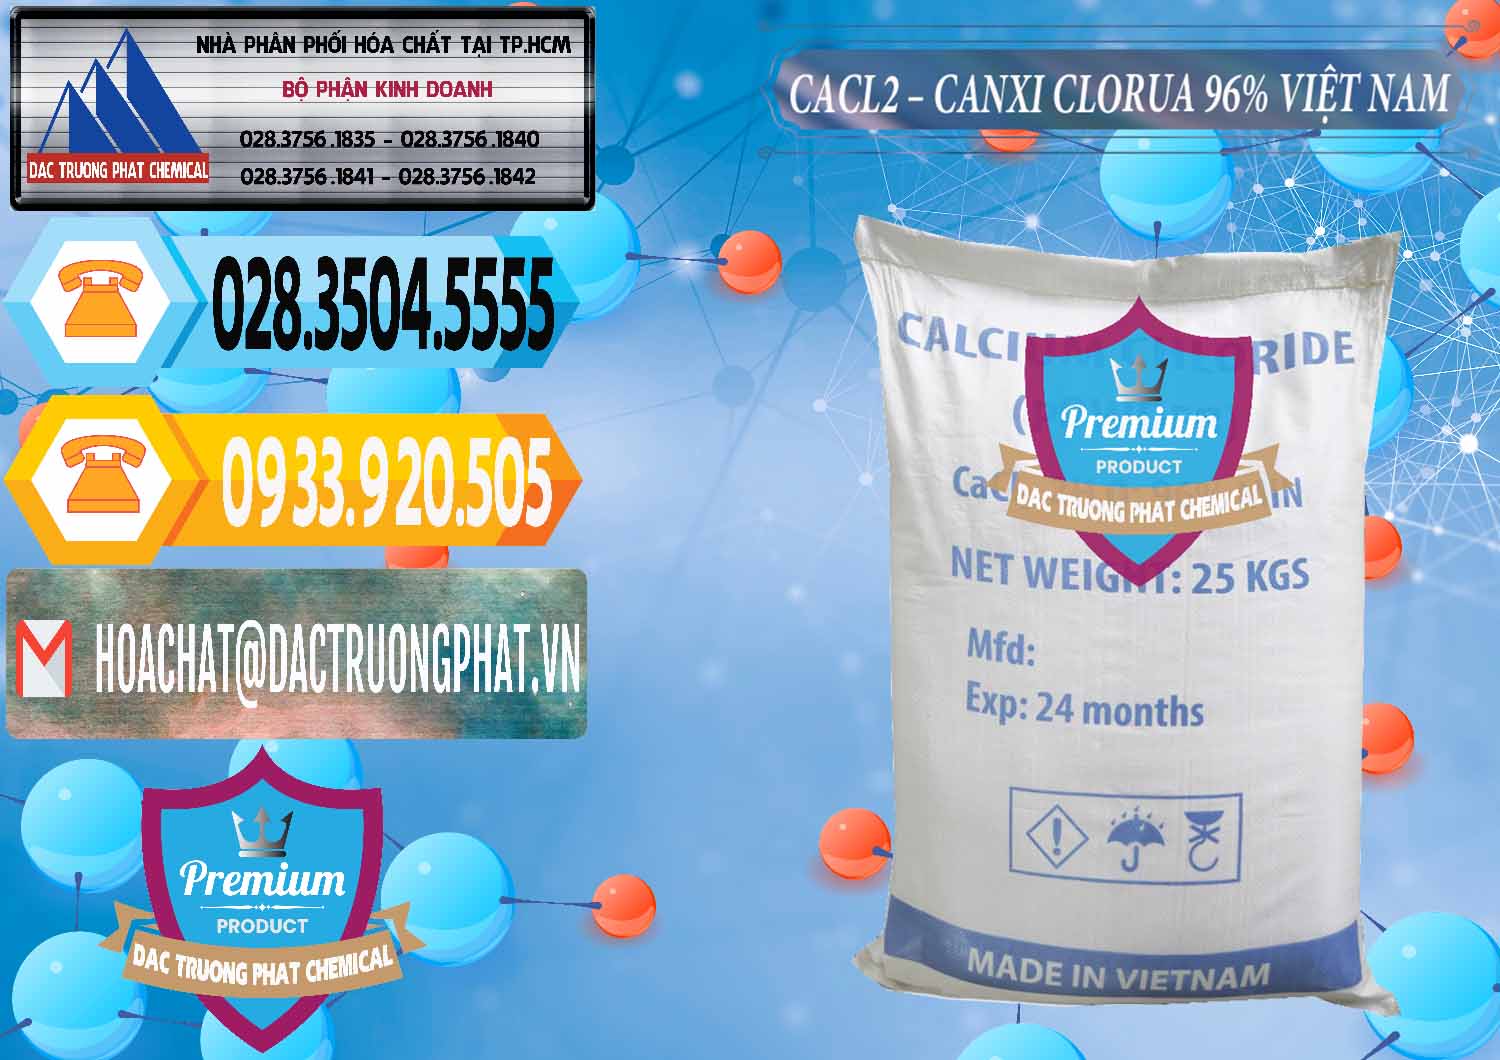 Cung cấp _ bán CaCl2 – Canxi Clorua 96% Việt Nam - 0236 - Cty cung ứng ( phân phối ) hóa chất tại TP.HCM - hoachattayrua.net